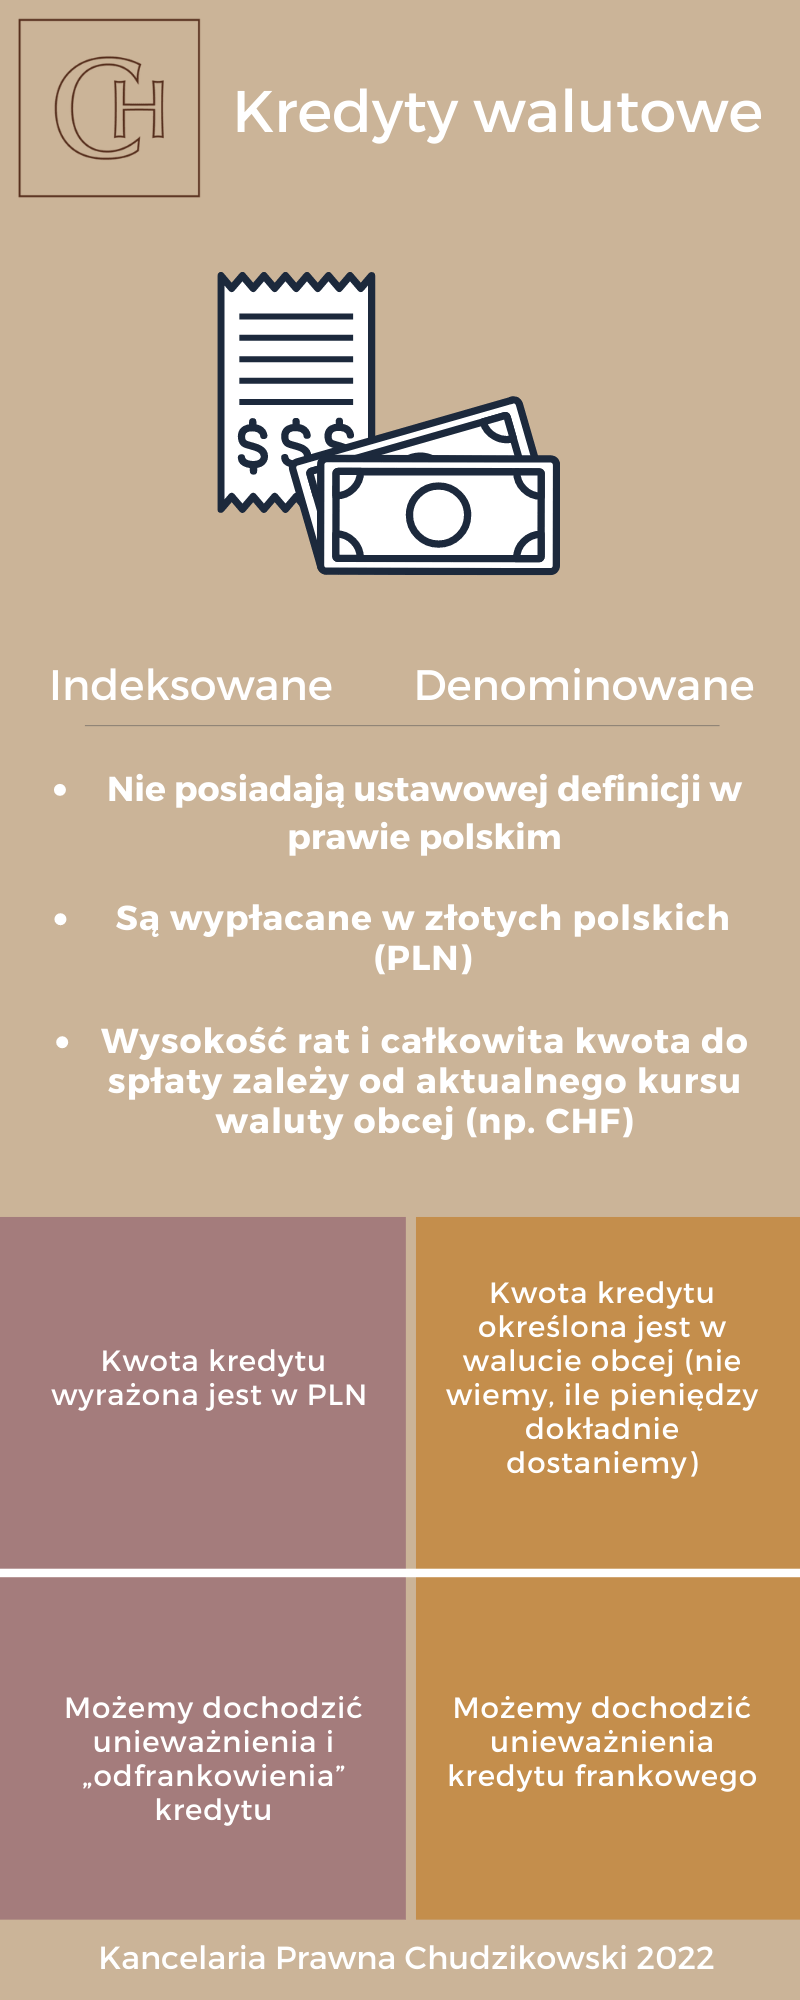 Kredyty indeksowane i denominowane, infografika porównująca podobieństwa i różnice. Podobieństwa: Kredyty indeksowane i denominowane nie posiadają ustawowej definicji w prawie polskim, są wypłacane w złotych polskich (PLN), wysokość rat i całkowita kwota do spłaty zależy od aktualnego kursu waluty obcej (na przykład CHF). Różnice: kwota kredytu indeksowanego wyrażona jest w PLN, a kwota kredytu denominowanego w walucie obcej. W przypadku kredytu indeksowanego możemy dochodzić unieważnienia i odfrankowienia kredytu, a w przypadku kredytu denominowanego możemy dochodzić jedynie unieważnienia kredytu frankowego.